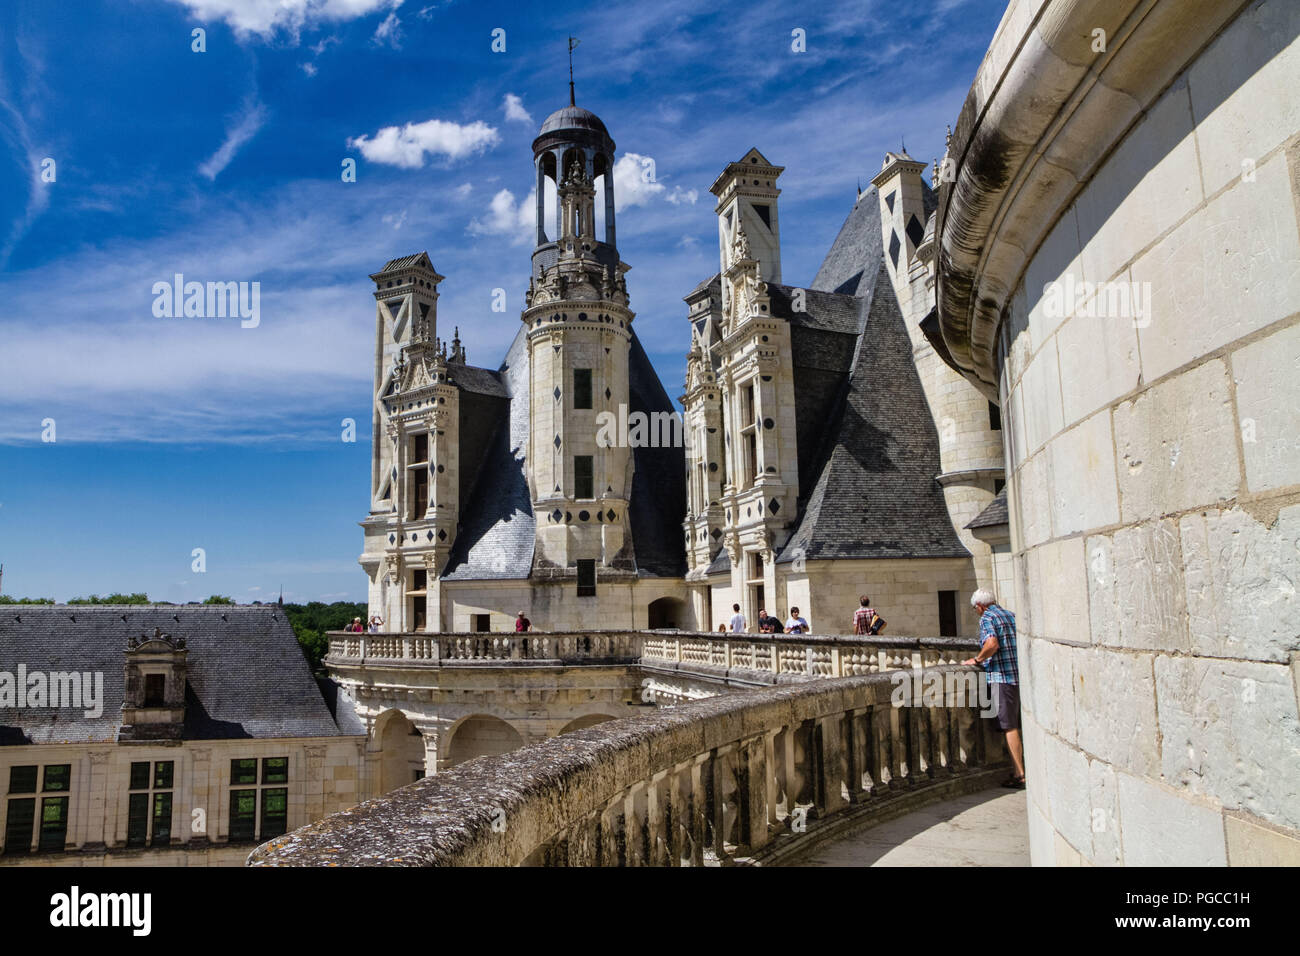 Le Château de Chambord est un Château français situé dans la Commune de Chambord. Architektur extraordinaire imaginée pour la Gloire de François I Stockfoto